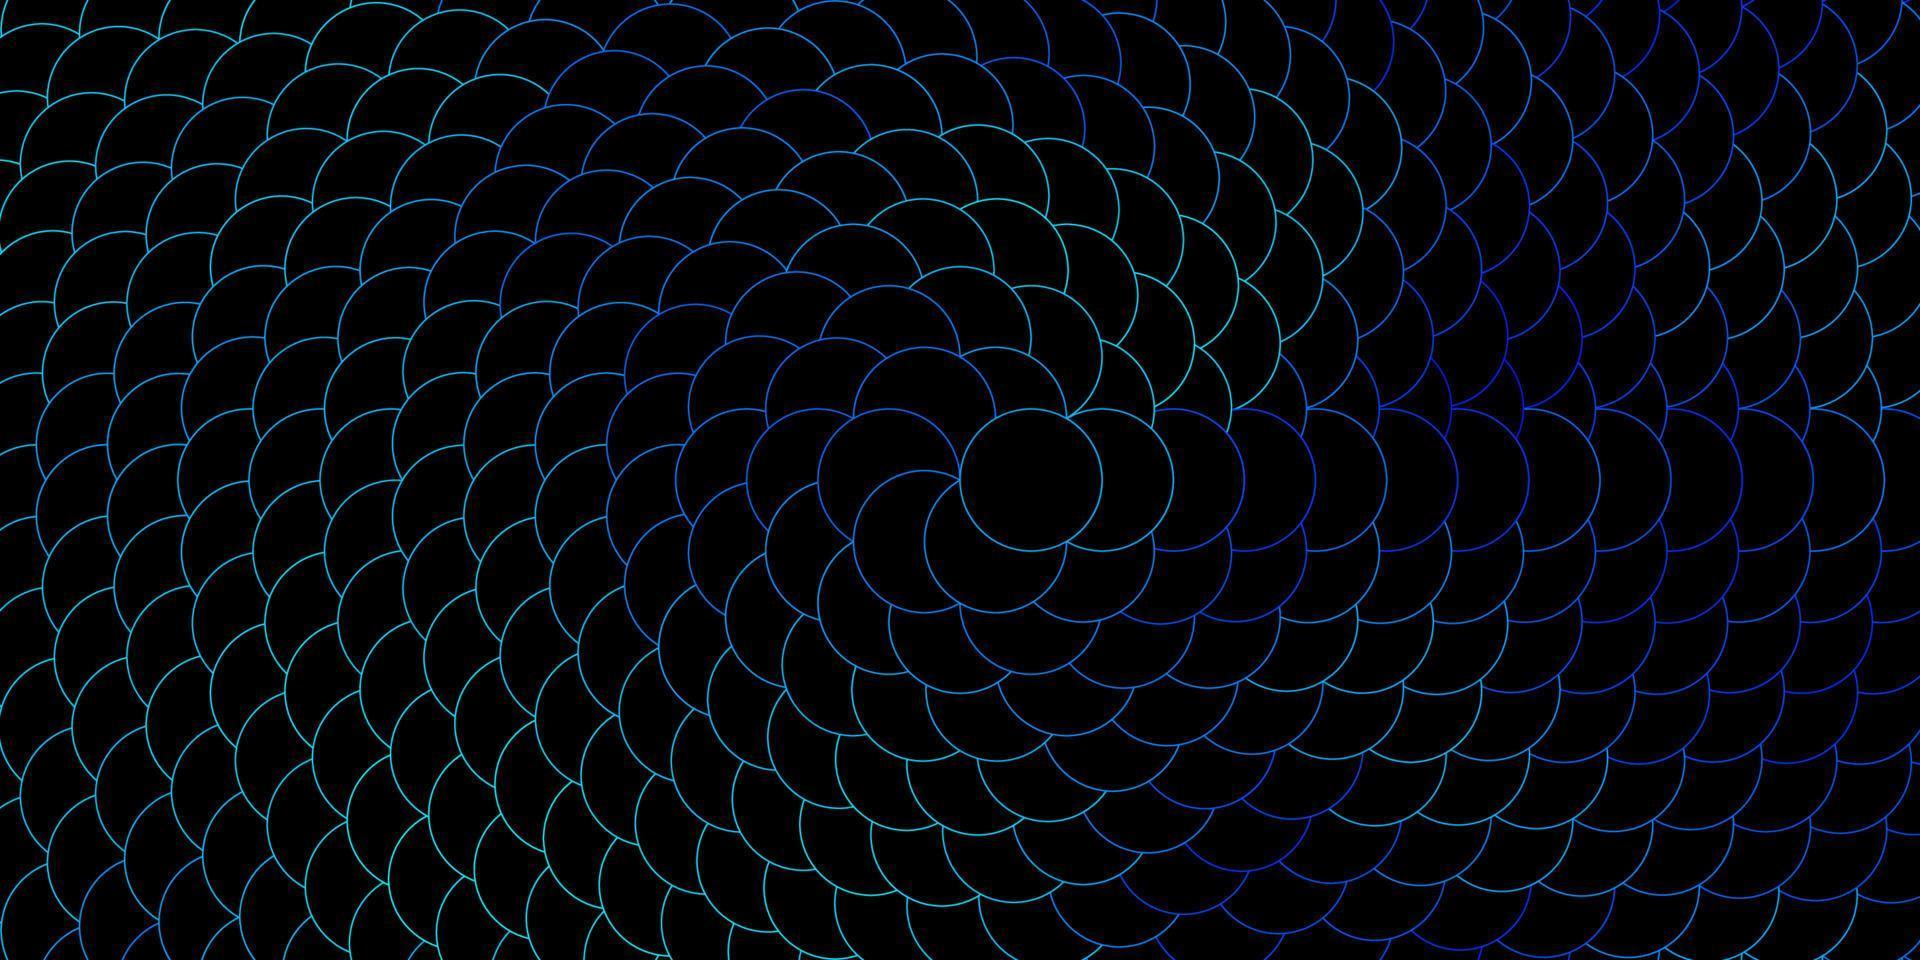 Telón de fondo de vector azul oscuro con círculos.